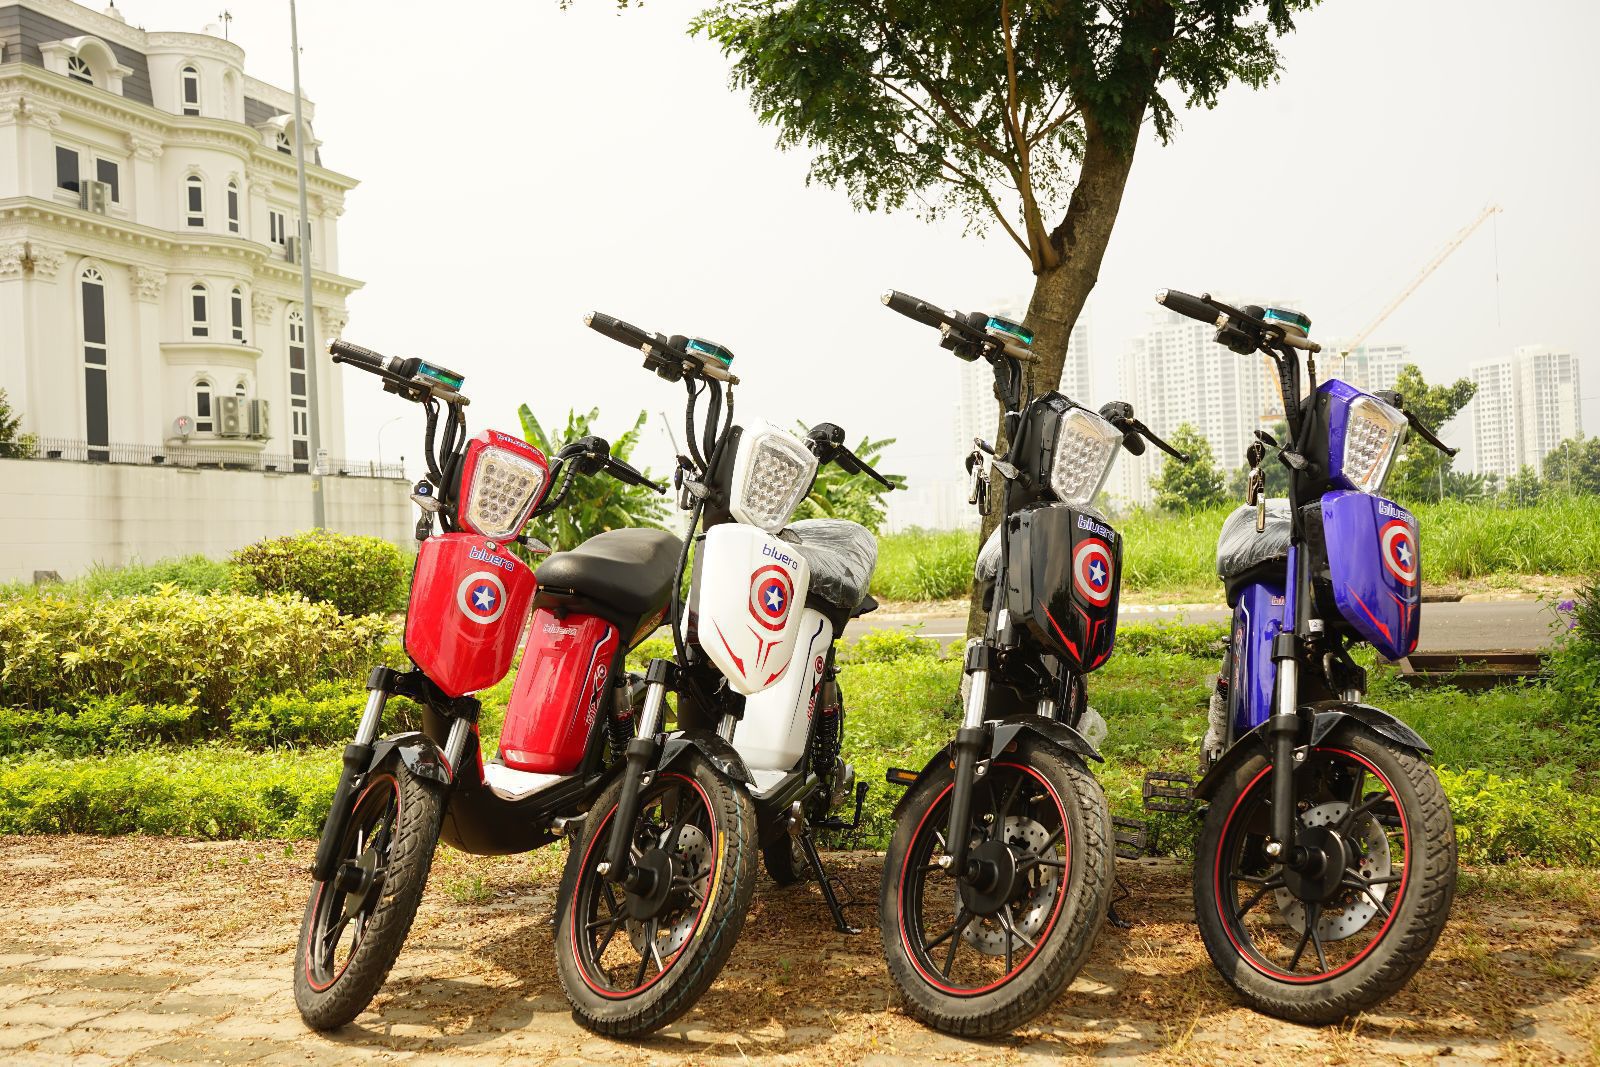 Mua sỉ xe đạp điện tại Tp. HCM – địa chỉ uy tín nhất hiện nay